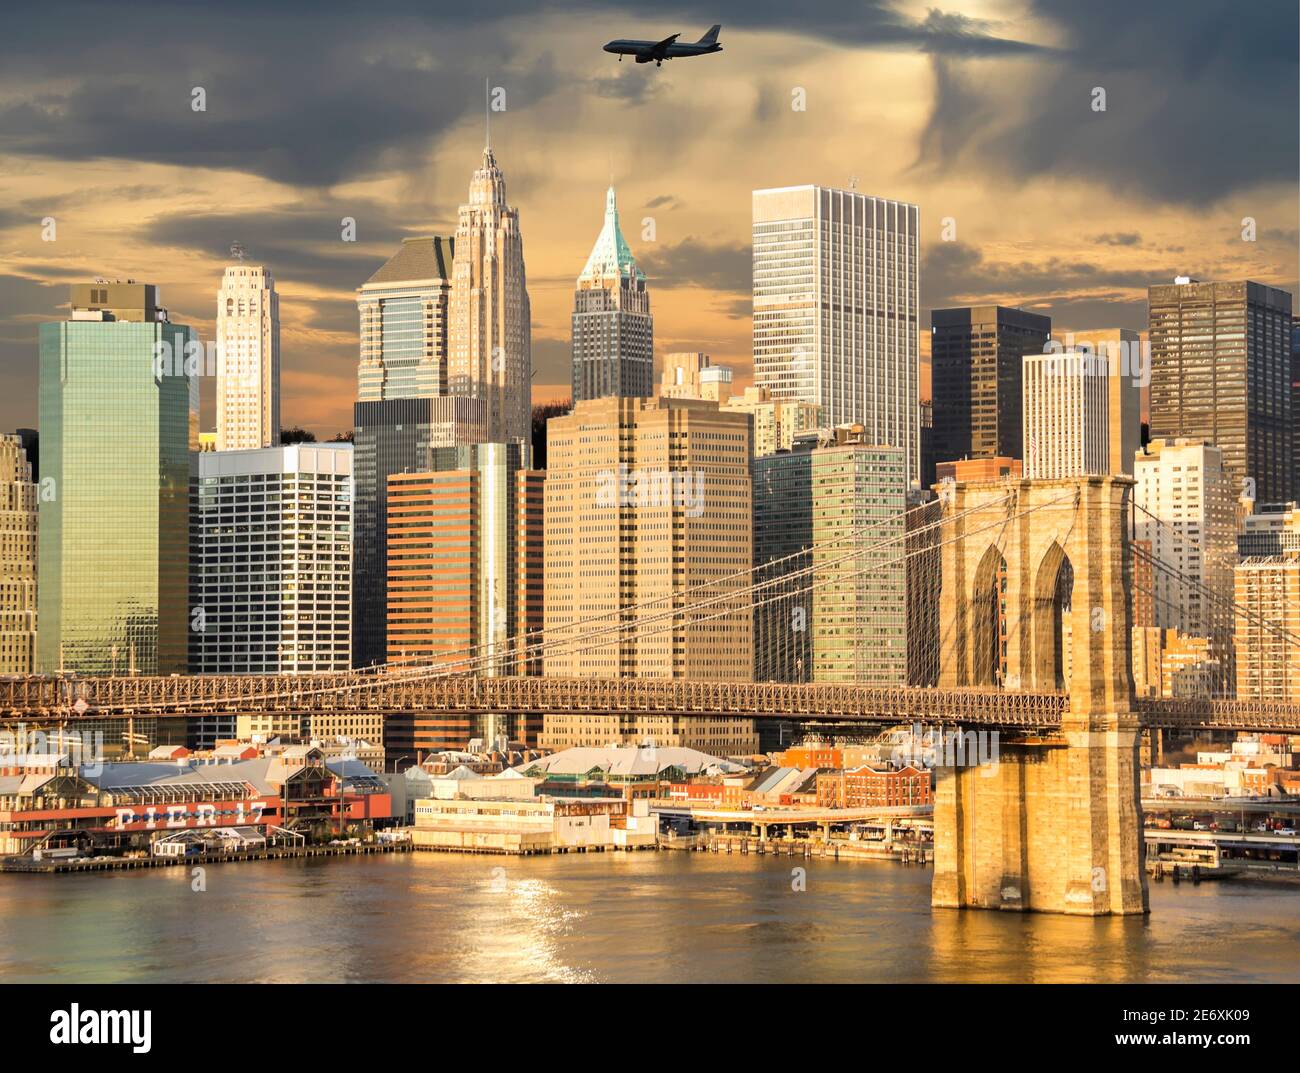 Lower Manhattan, New York, United States Stock Photo